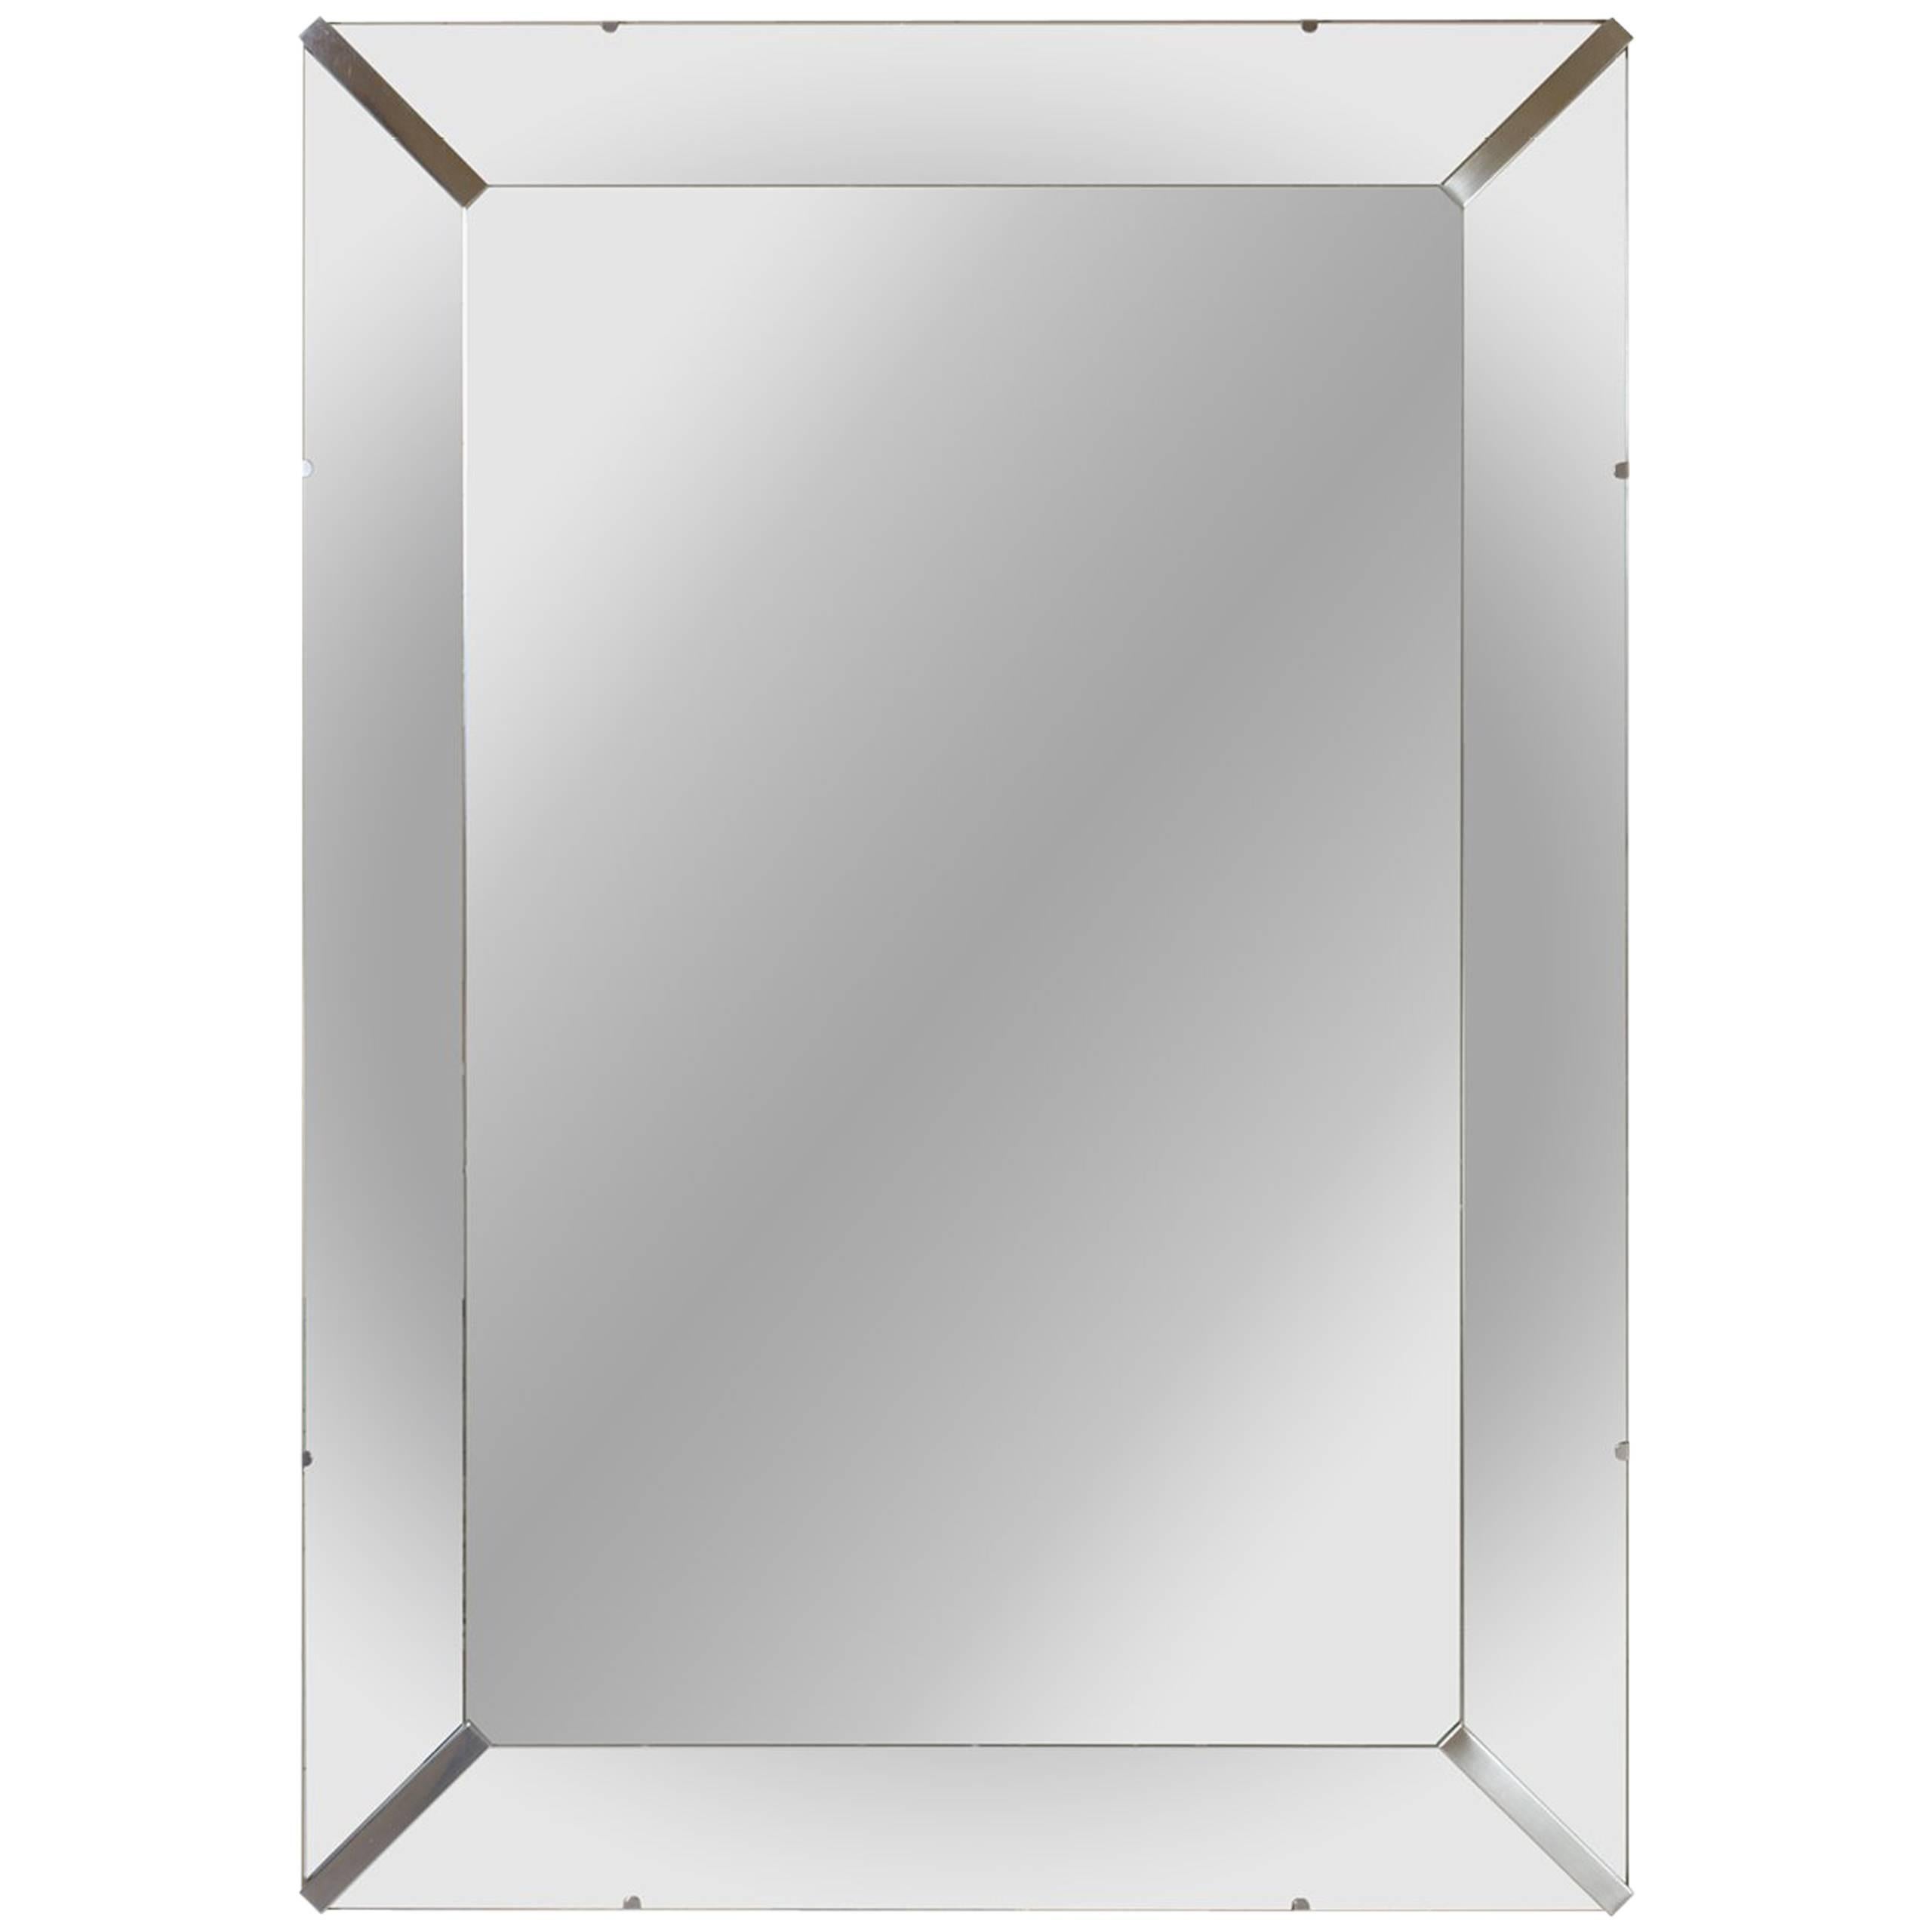 Grand miroir biseauté avec accents d'angle en nickel